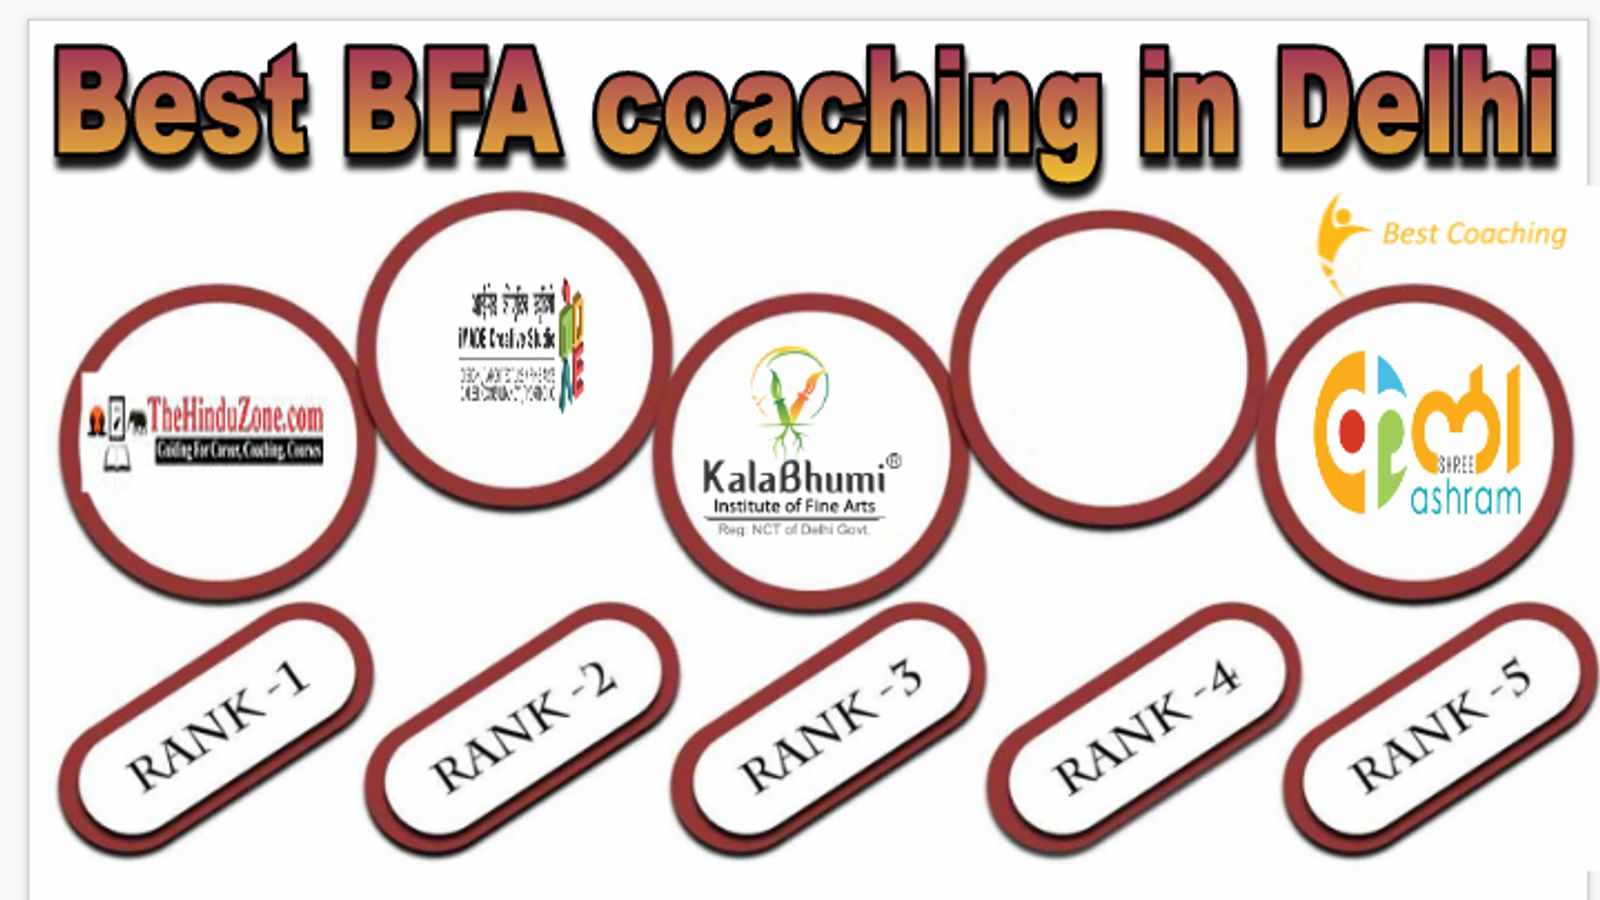 Best BFA coaching in Delhi